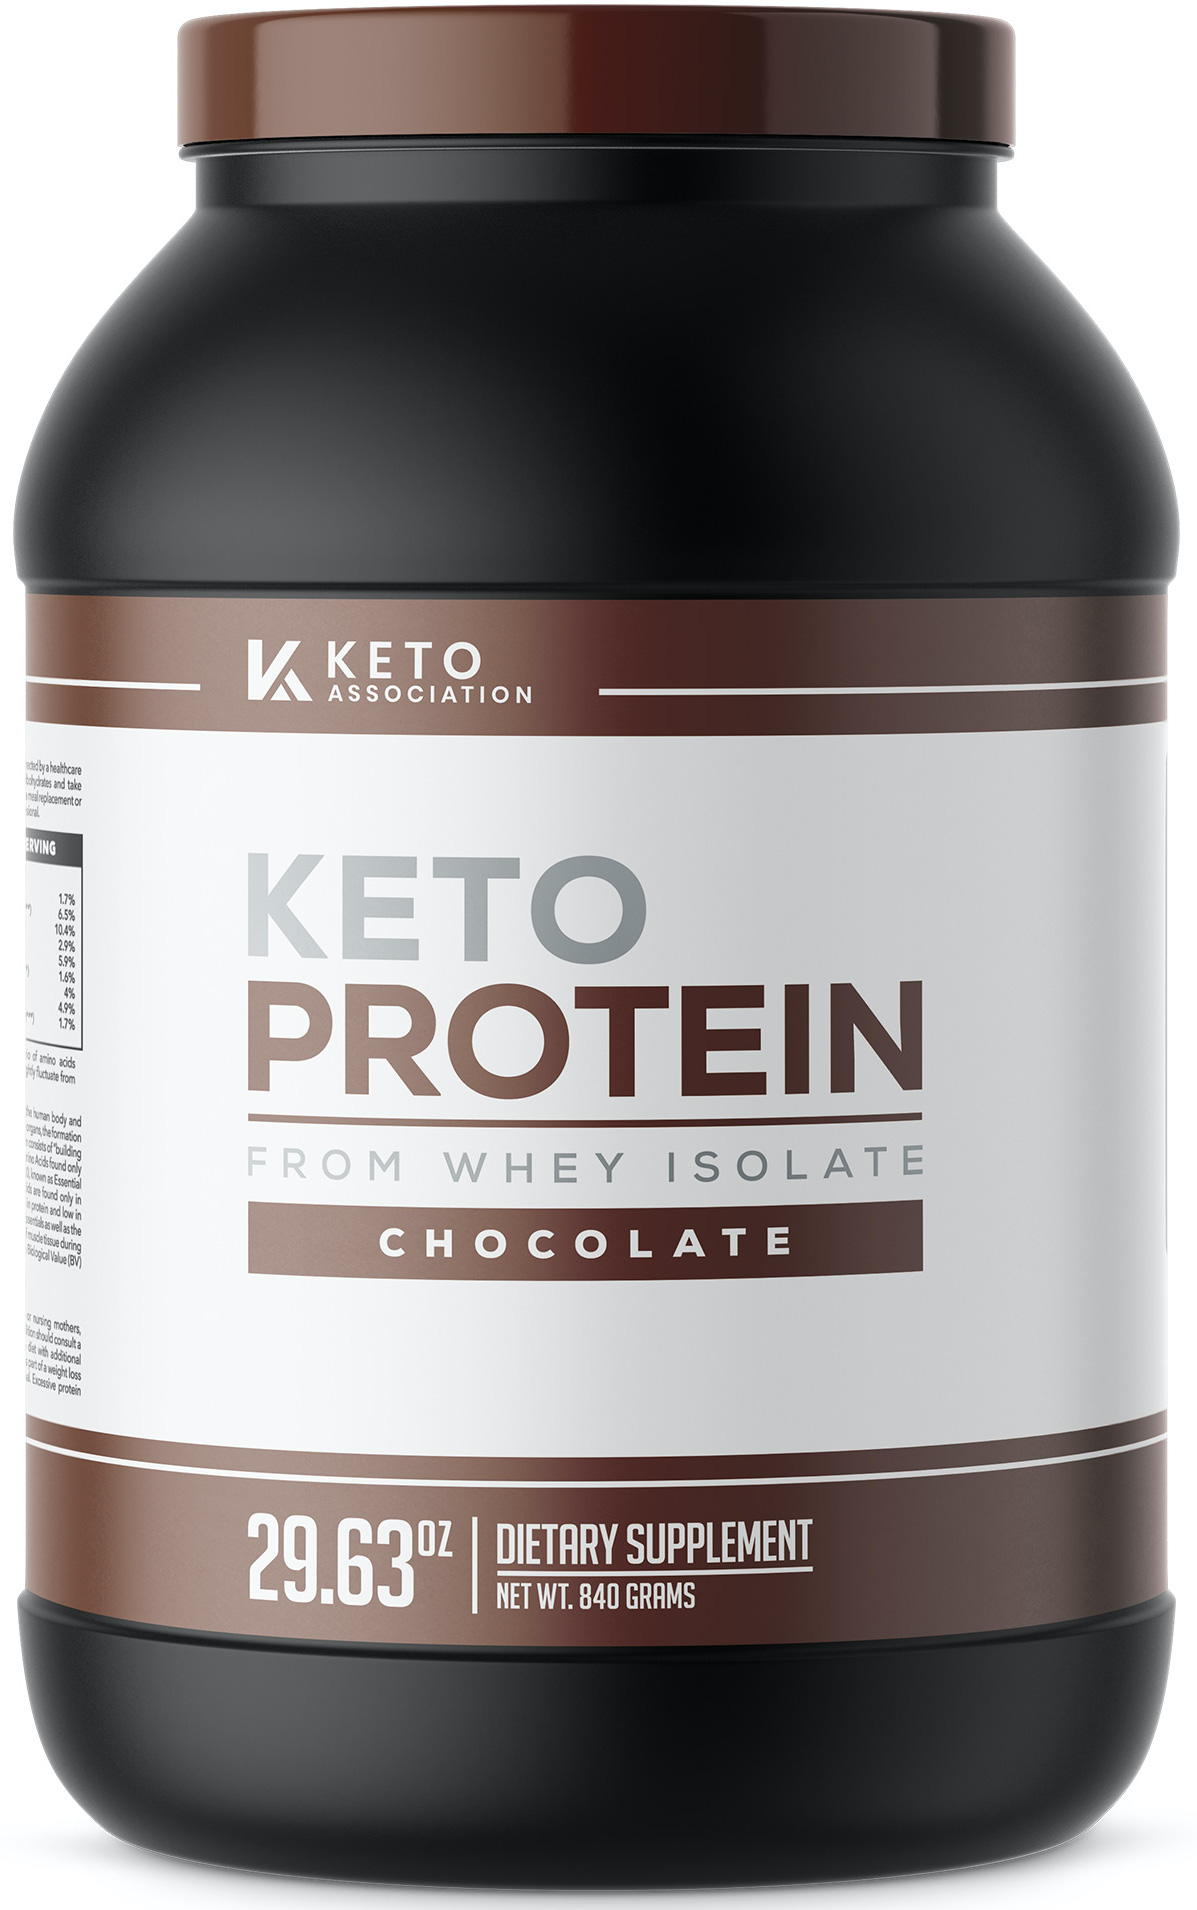 Order Keto Protein